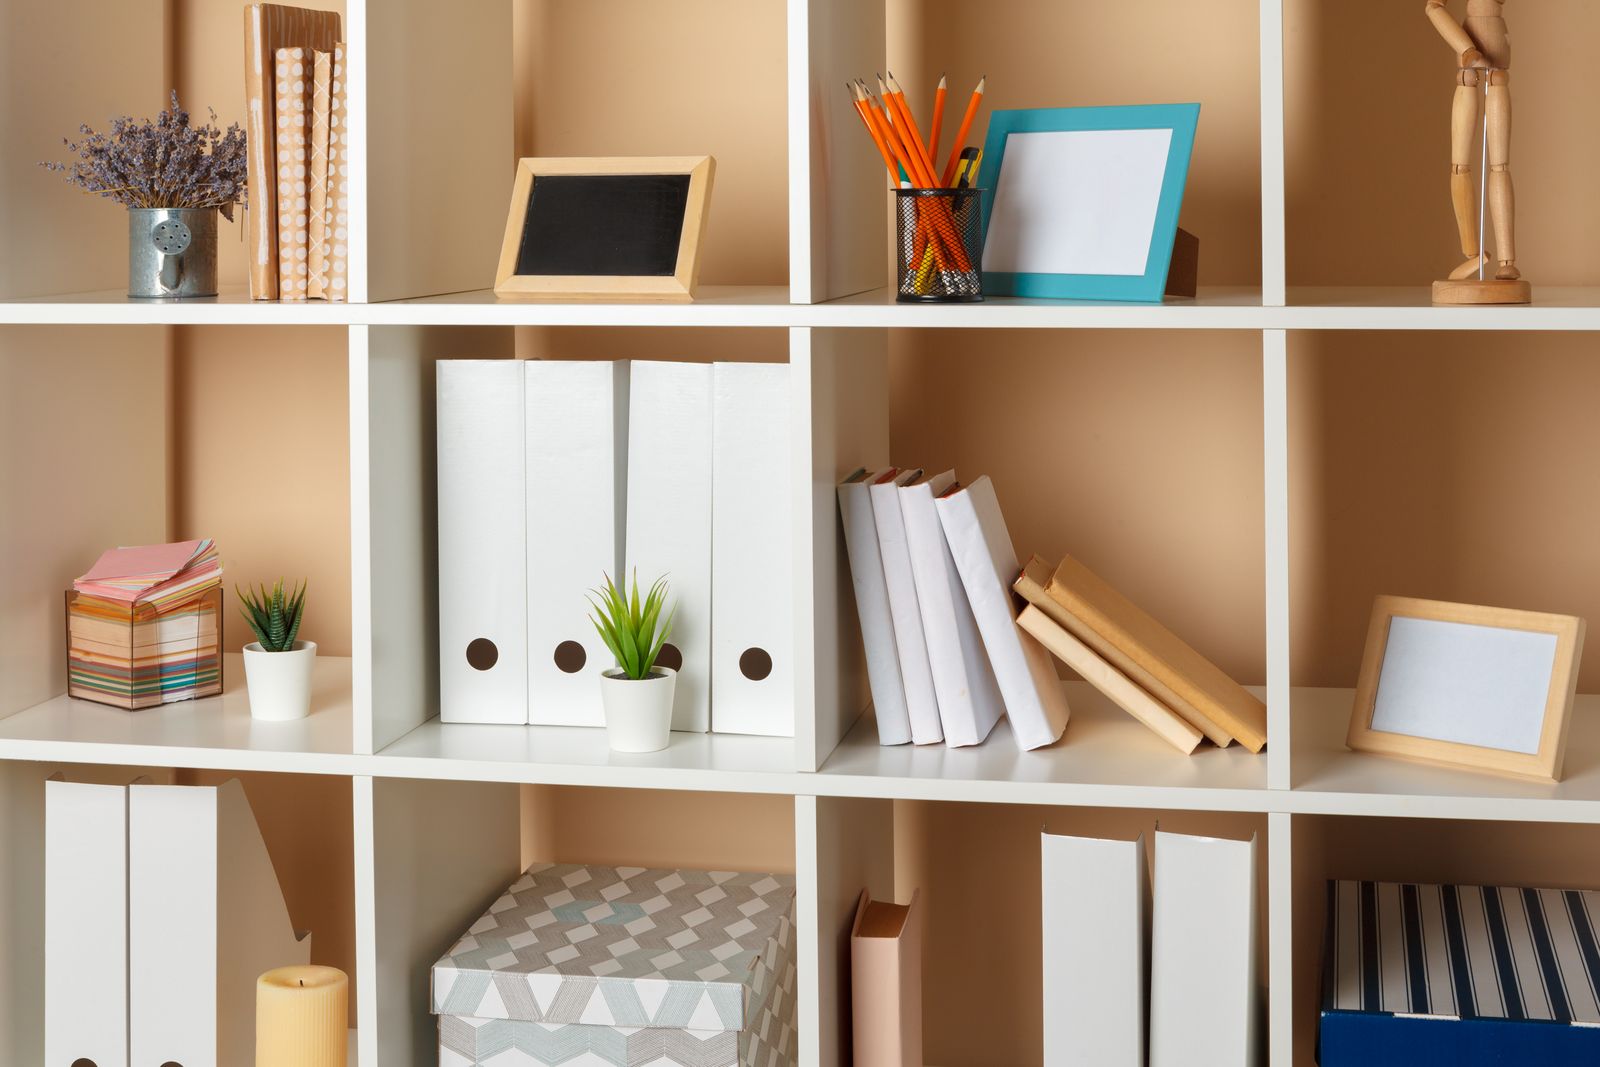 Organized office shelves